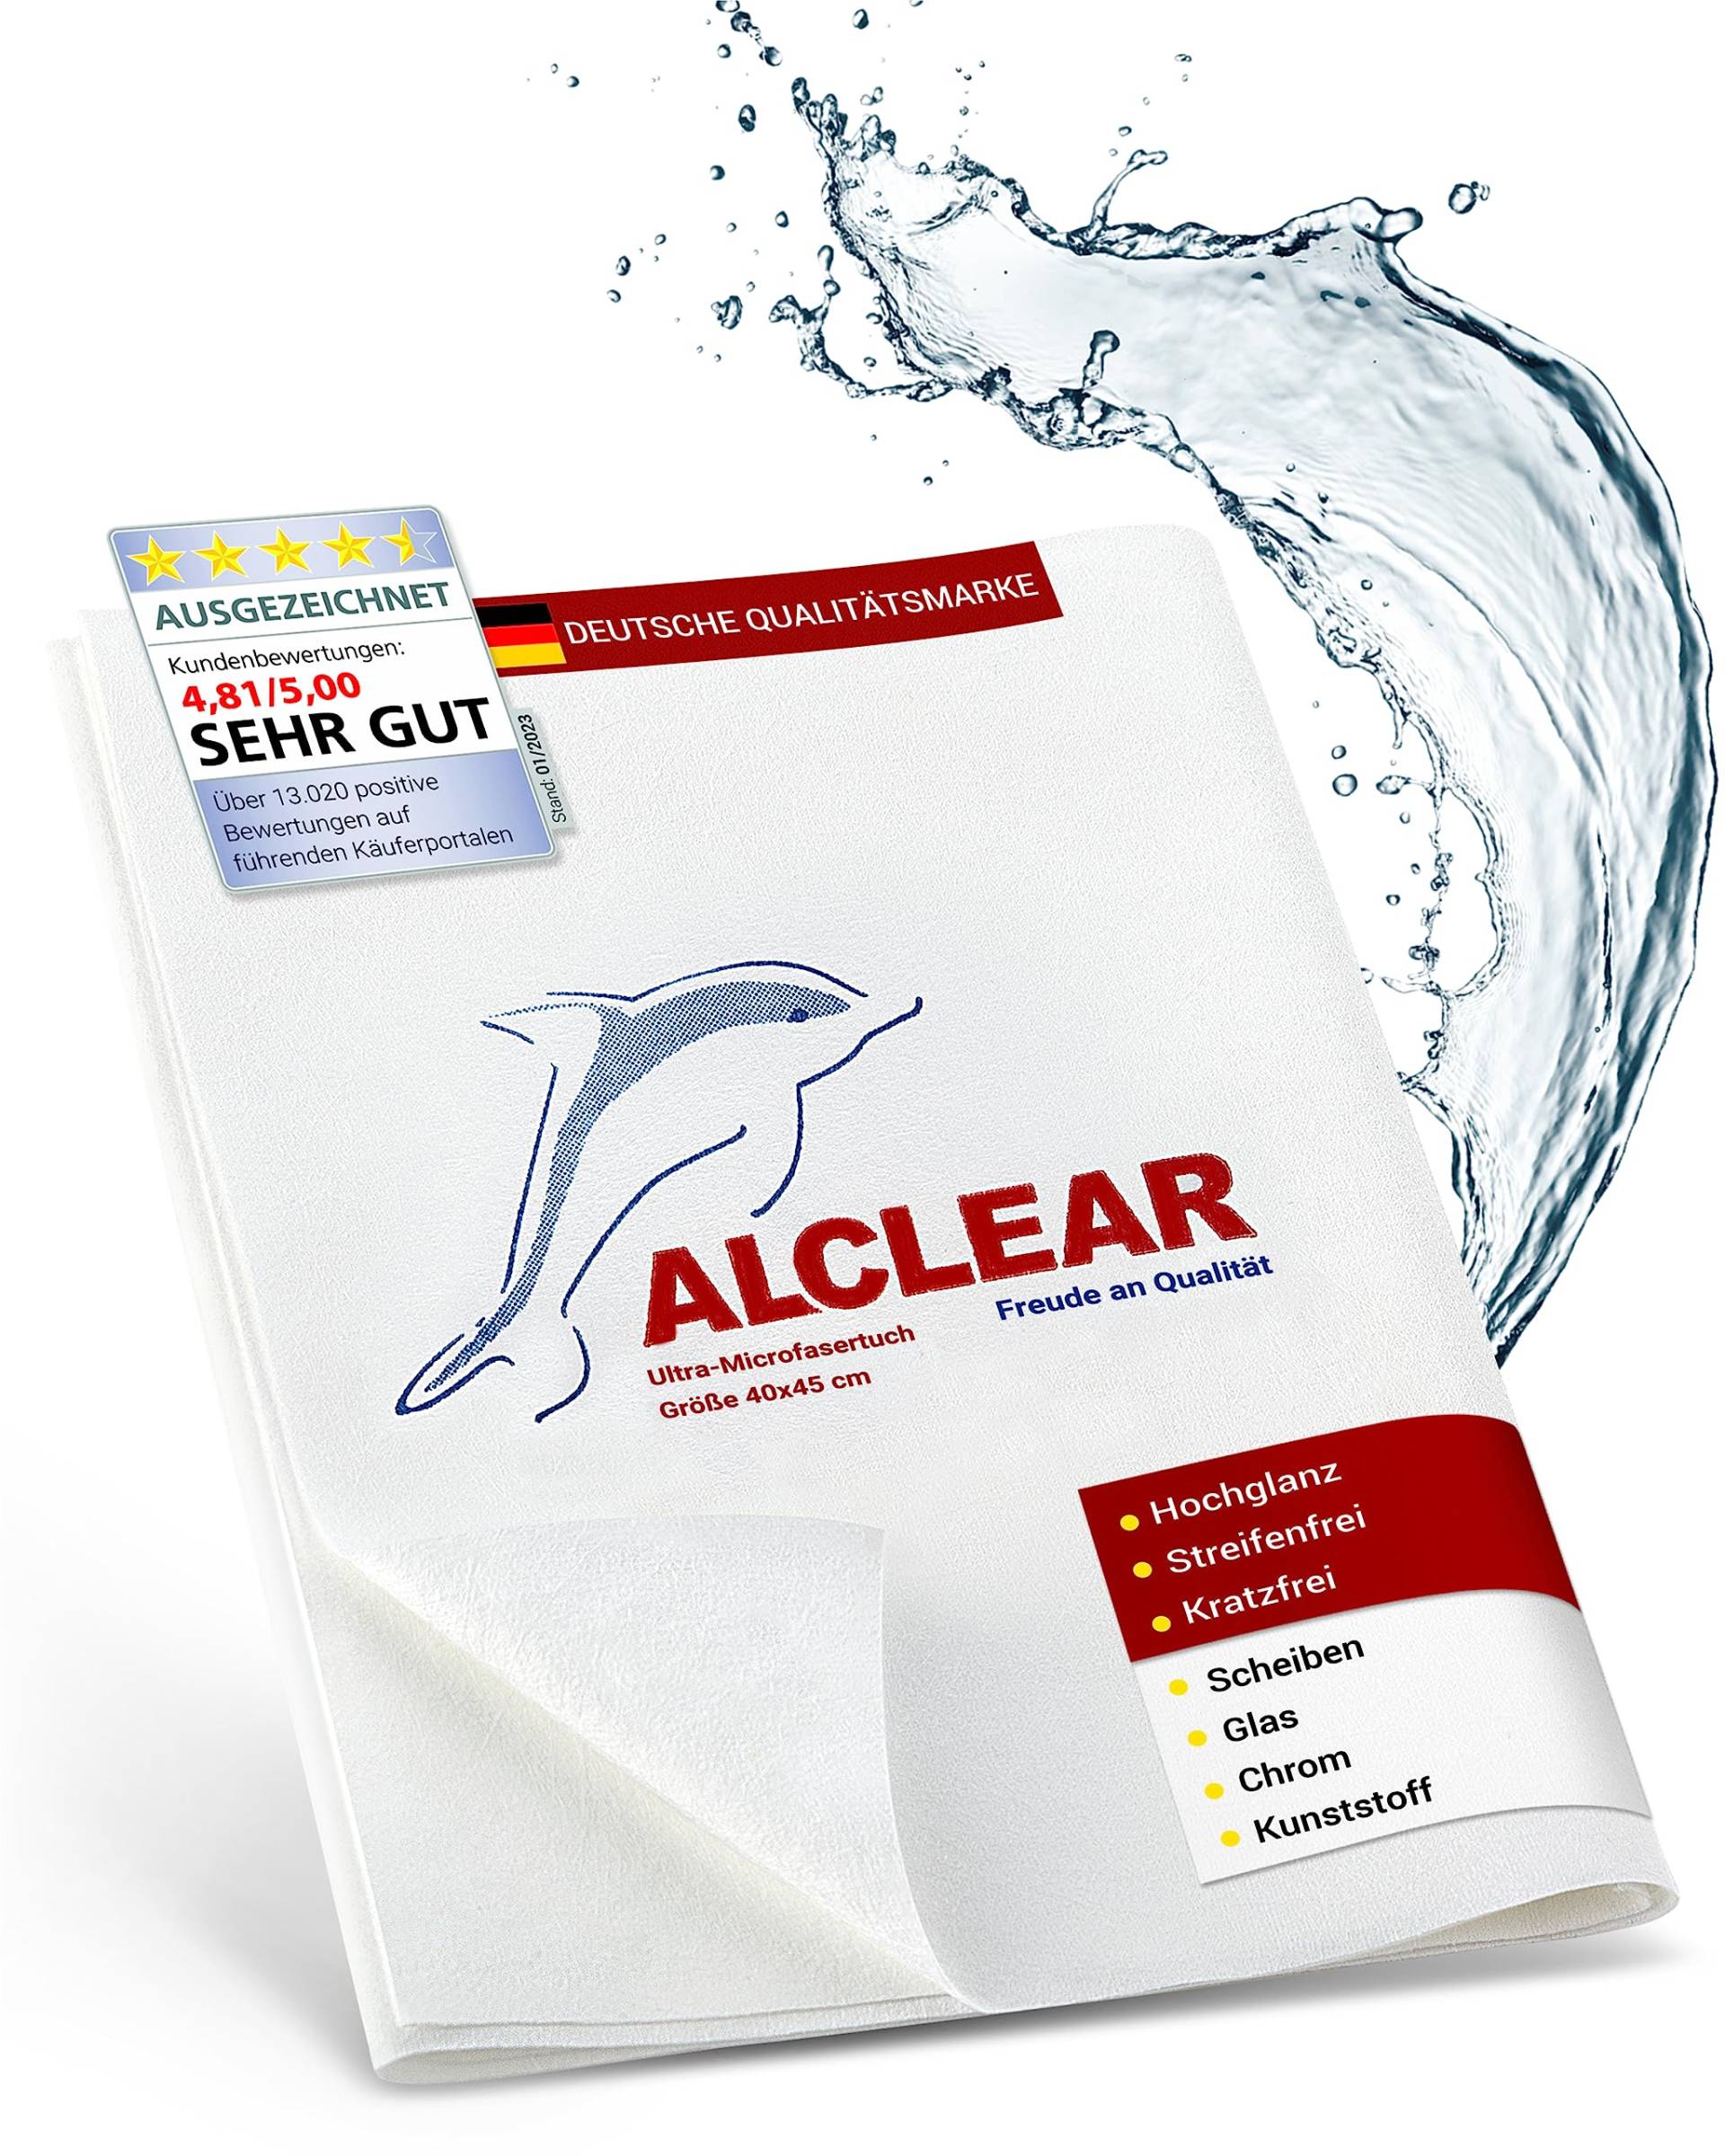 ALCLEAR 950001 Microfaser Fenstertuch - ideal als Scheibentuch zum Putzen von Auto, Haushalt, Fenster & Chrom - 40x45 cm, weiss von ALCLEAR